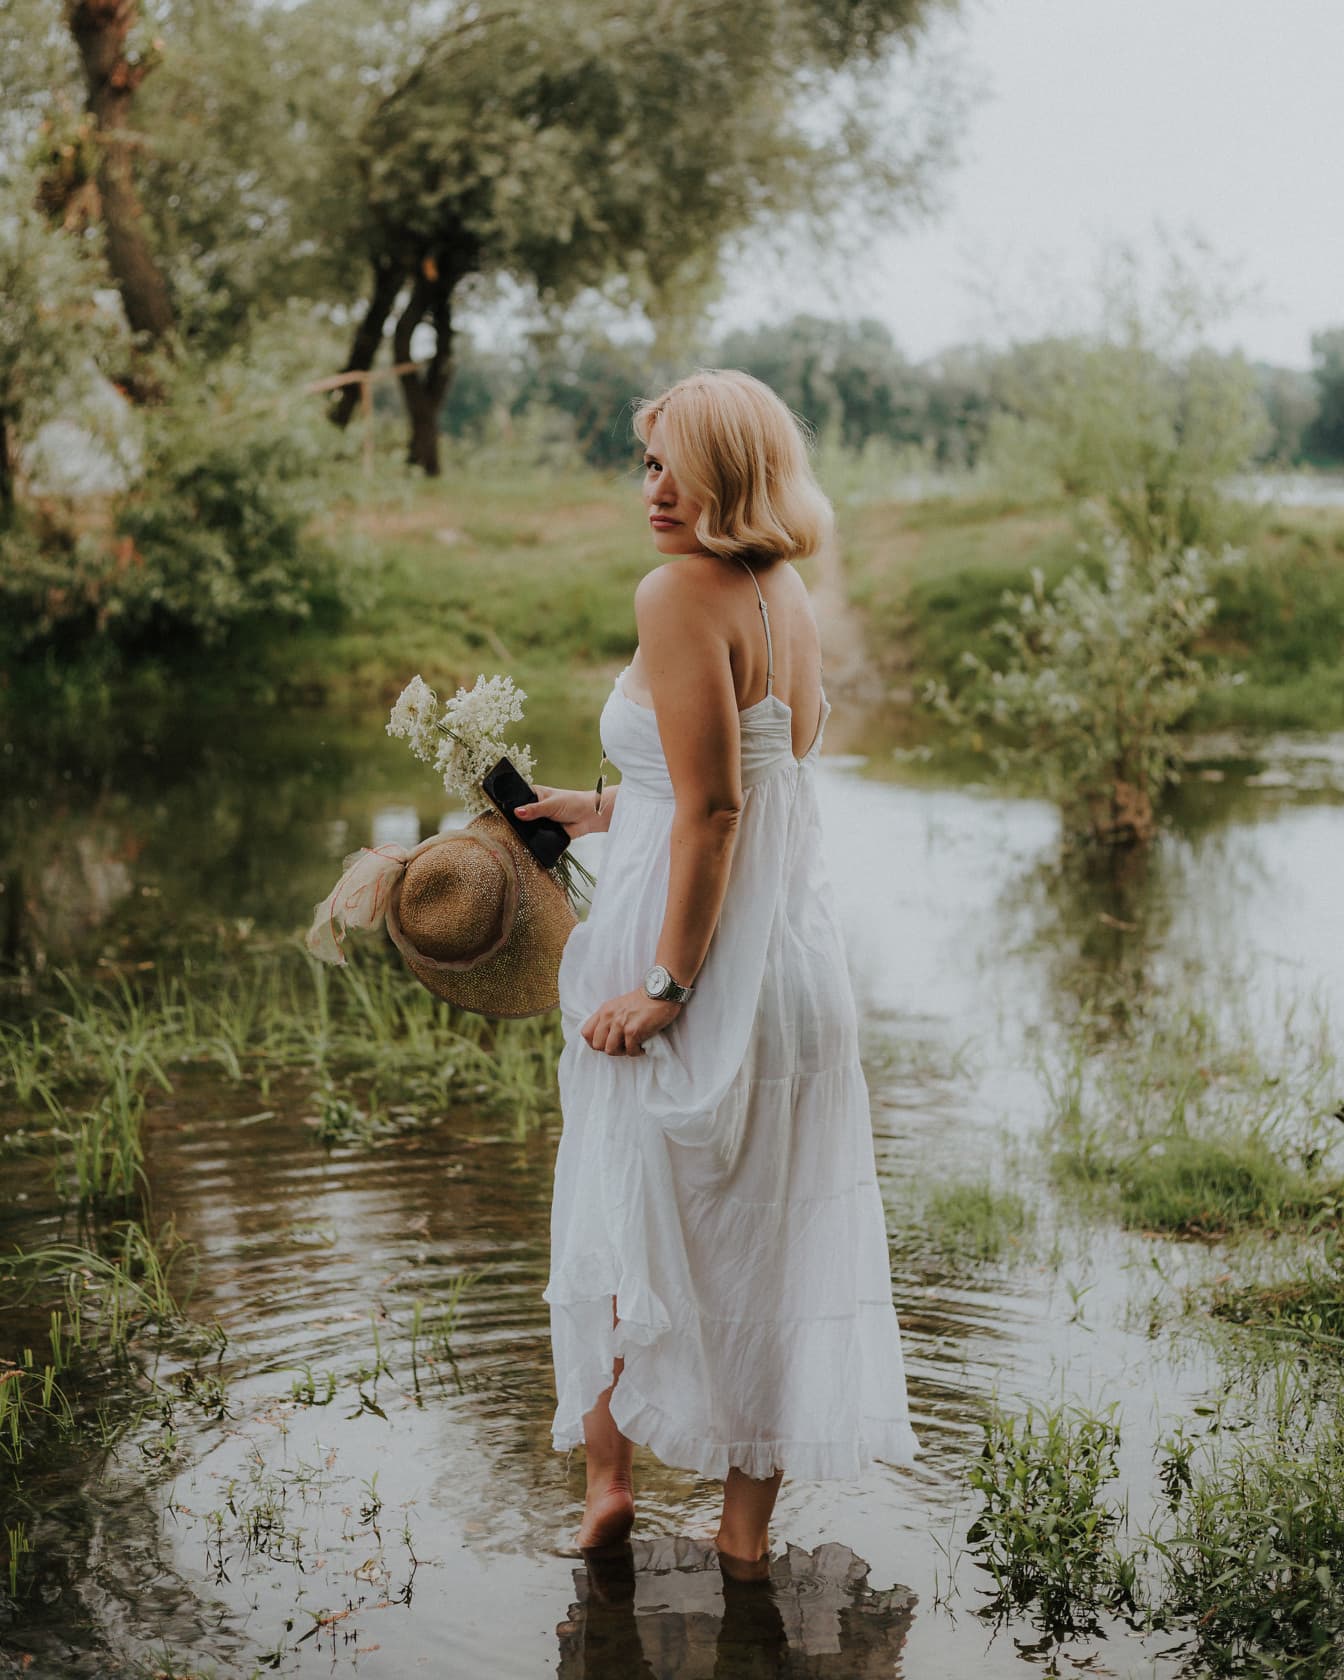 Prekrasna bosonoga plavuša u bijeloj haljini stoji u jezeru